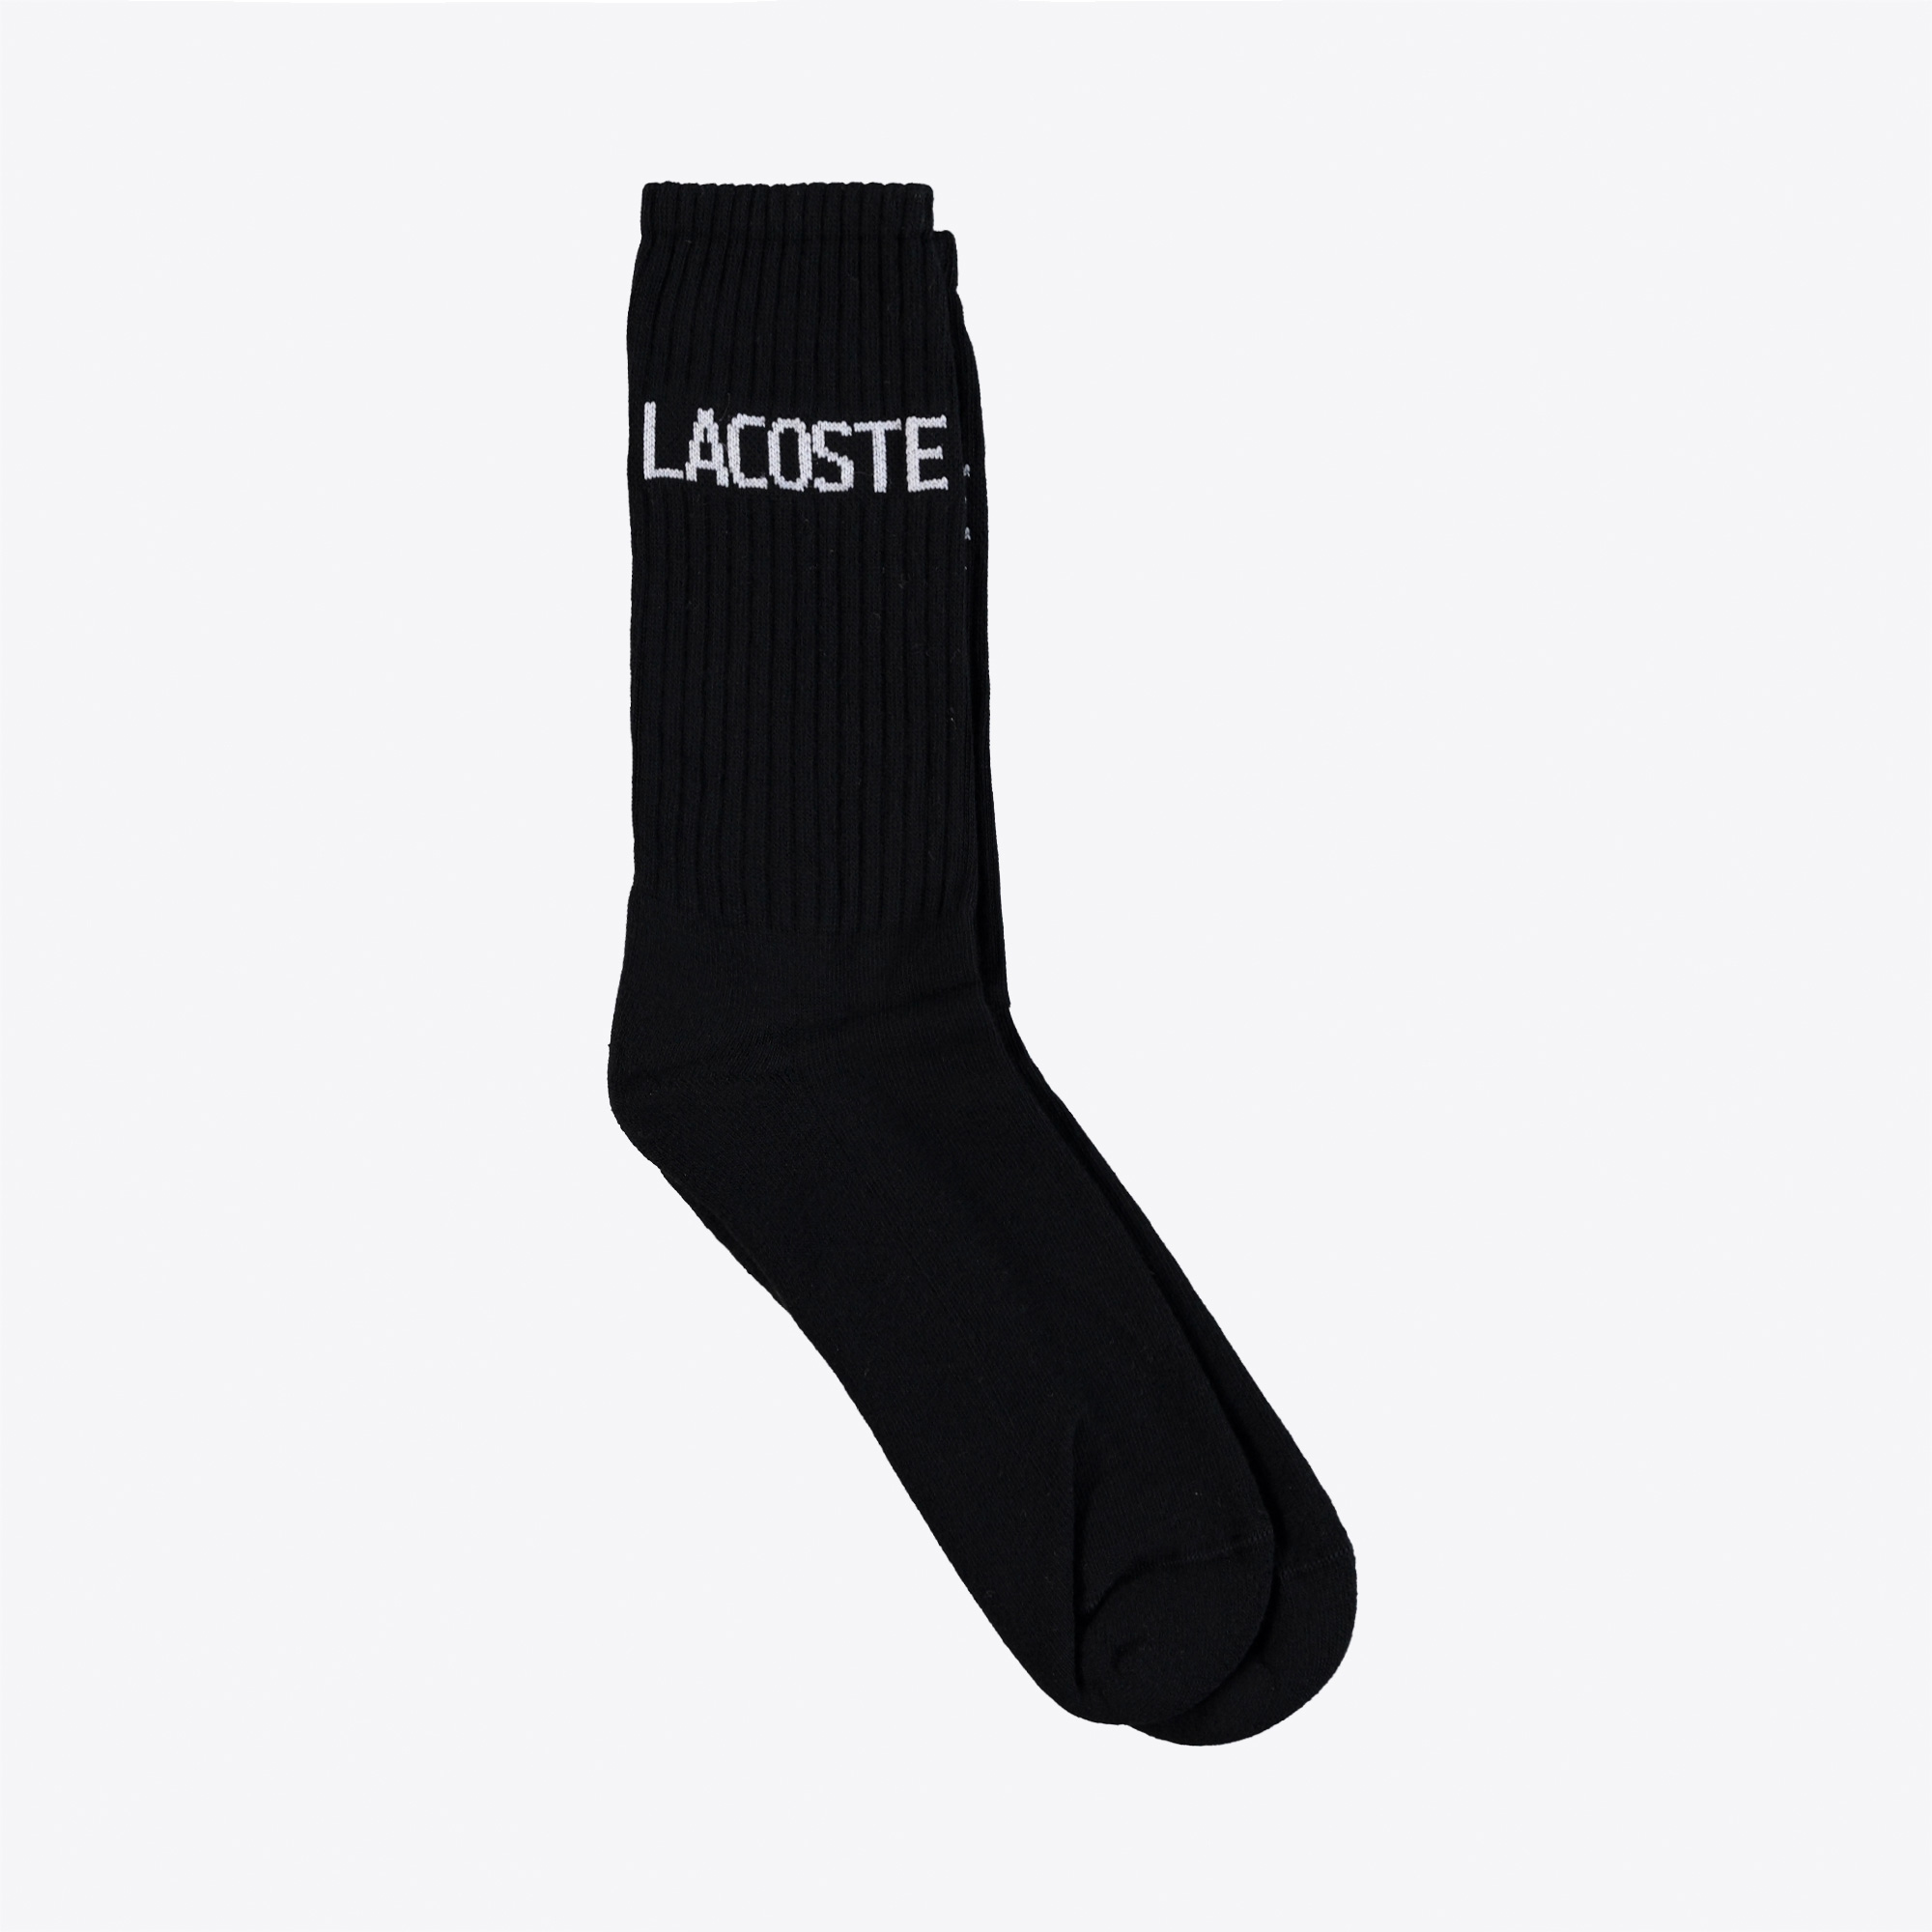 Lacoste Unisex Baskılı Siyah Çorap. 1